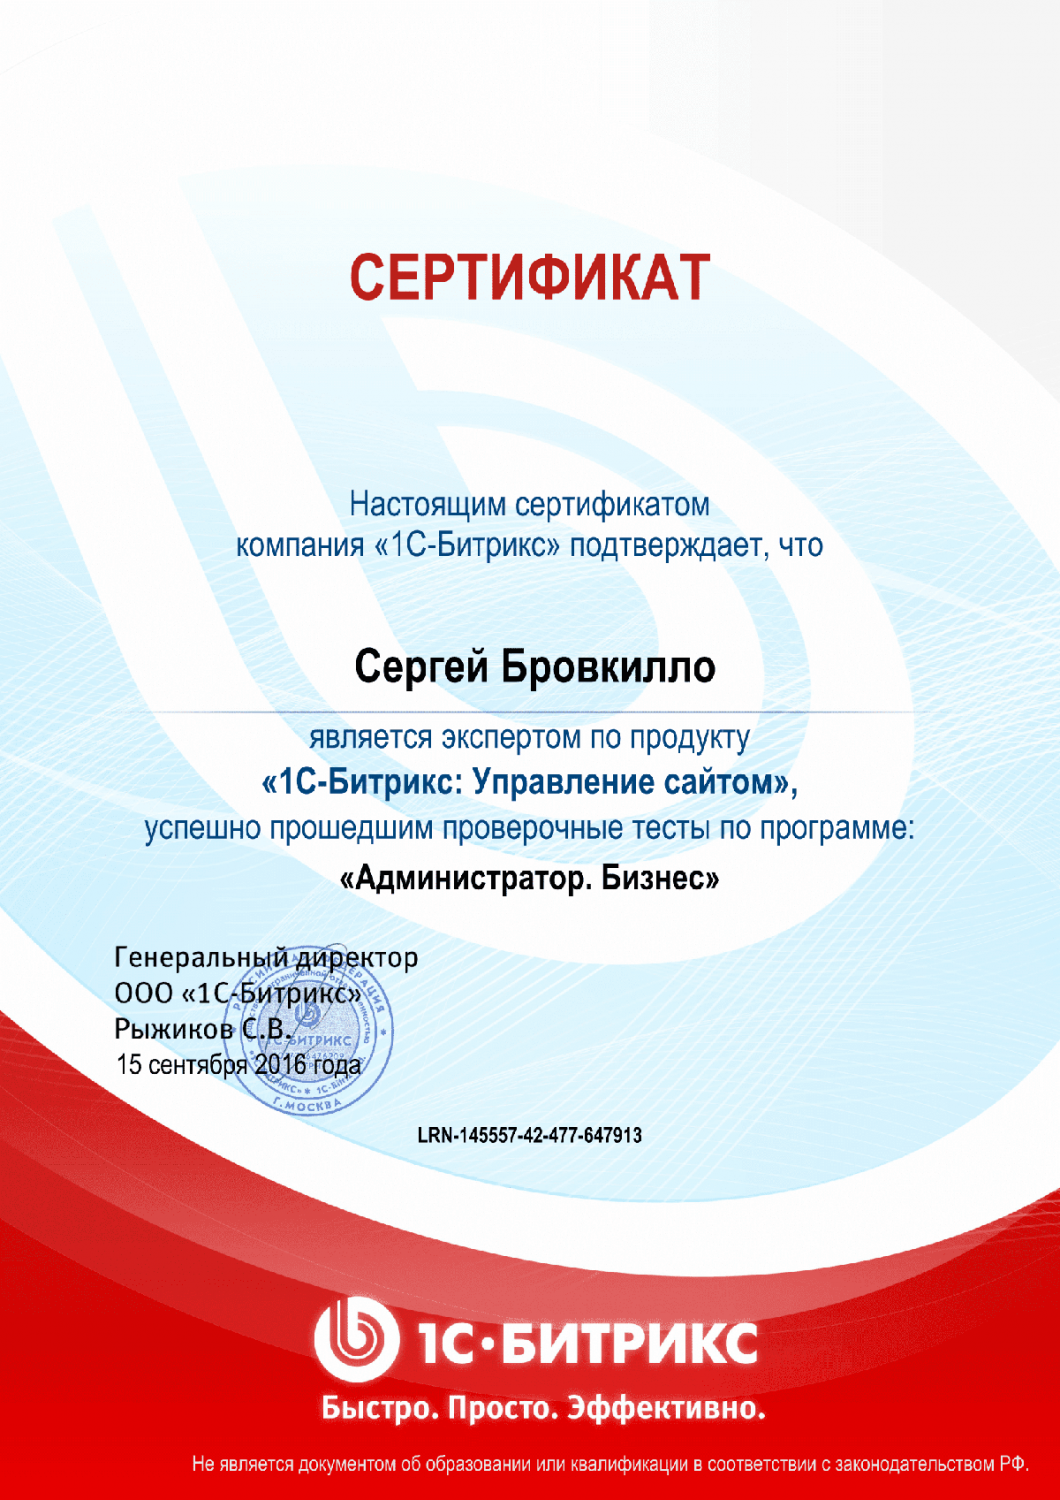 Сертификат эксперта по программе "Администратор. Бизнес" в Воронежа